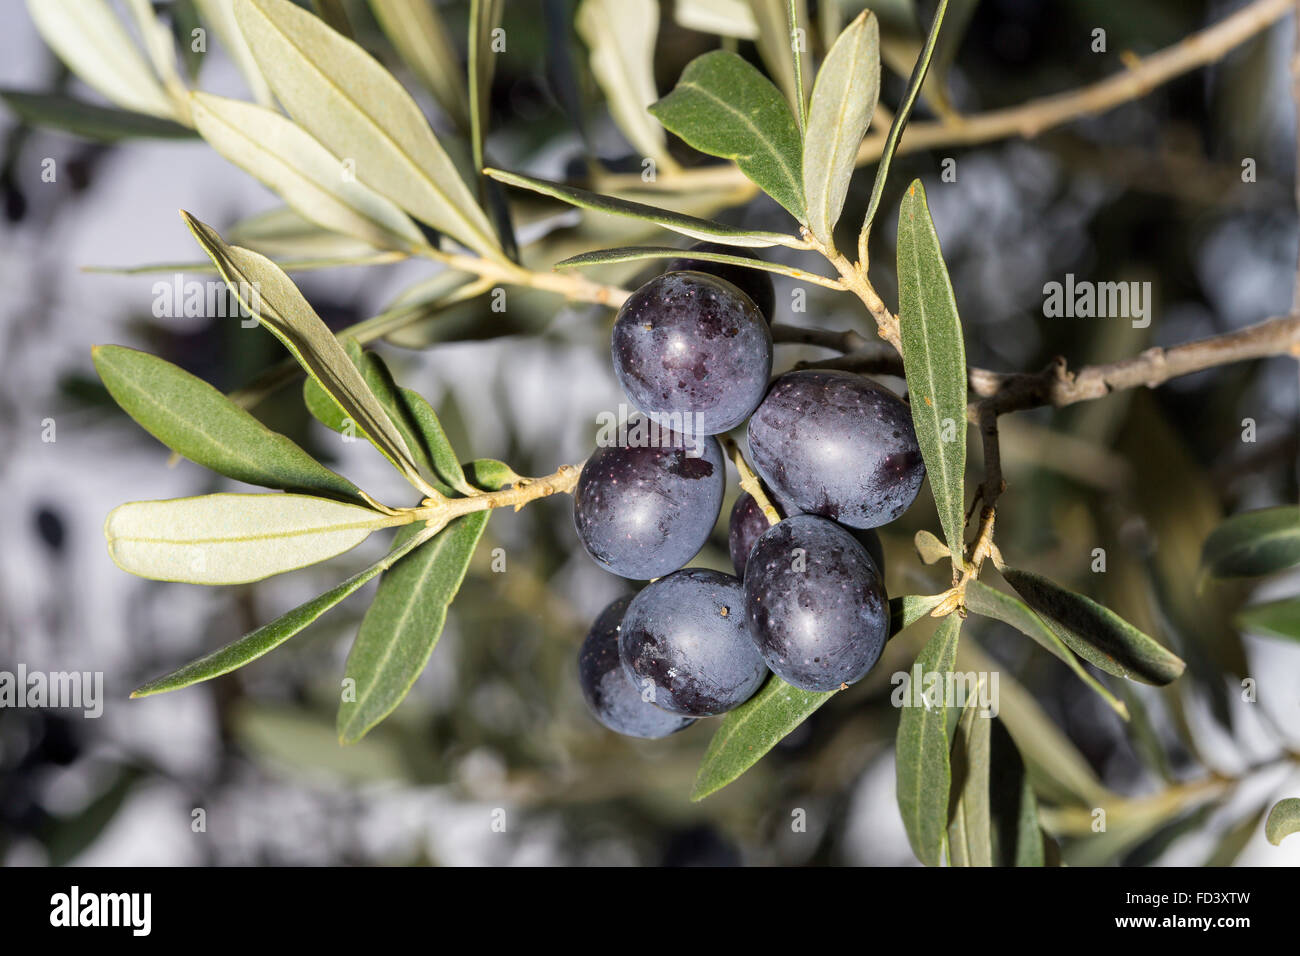 A load of black mature olives, Olea europaea, on a sprig Stock Photo